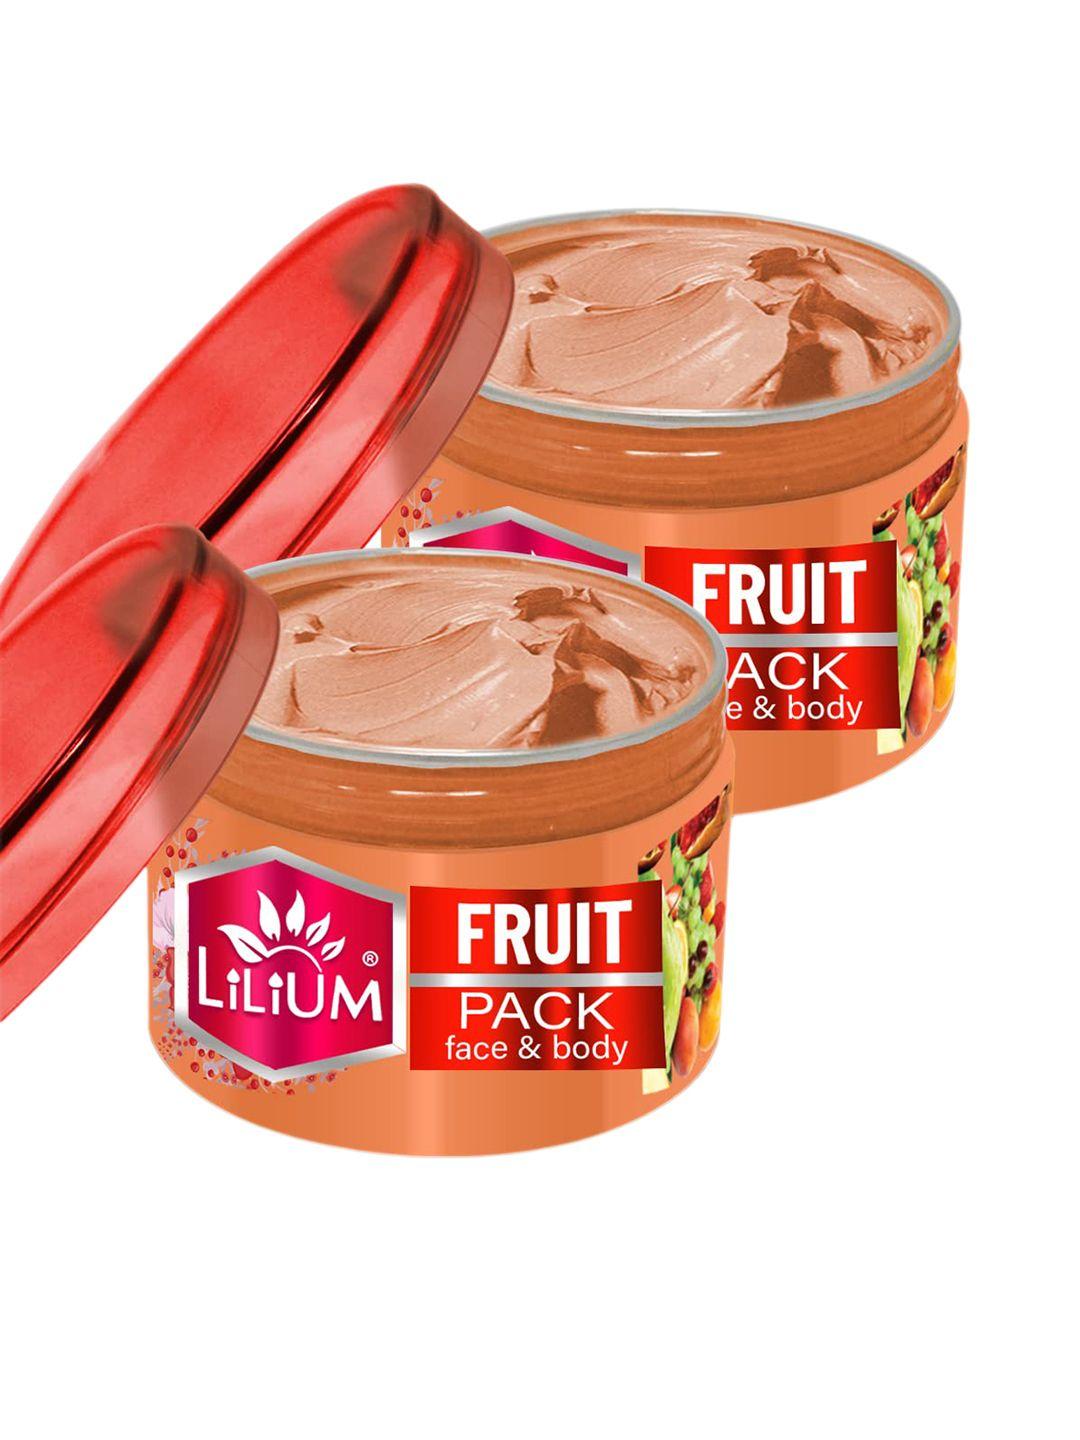 lilium 2-pcs fruit face pack 250g each